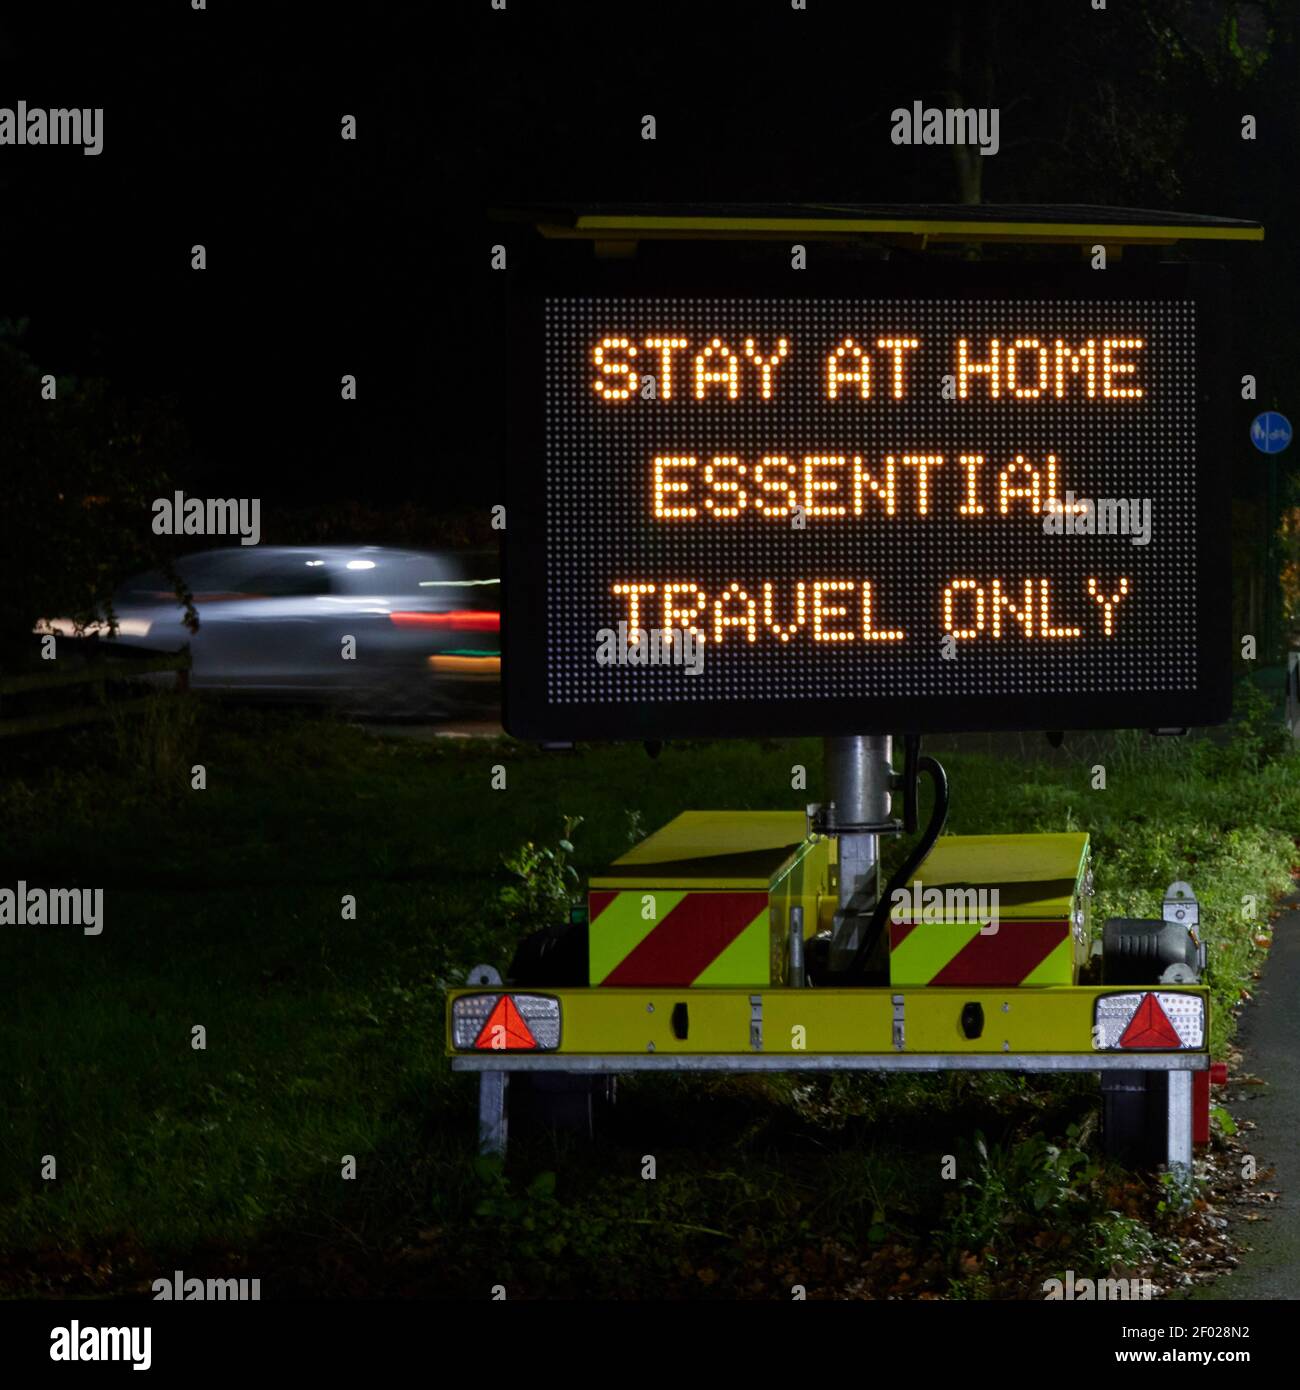 Panneau LED électronique « Stay at home Essential Travel Only » utilisé pour les communications gouvernementales de Covid-19 (coronavirus) en 2020. Banque D'Images